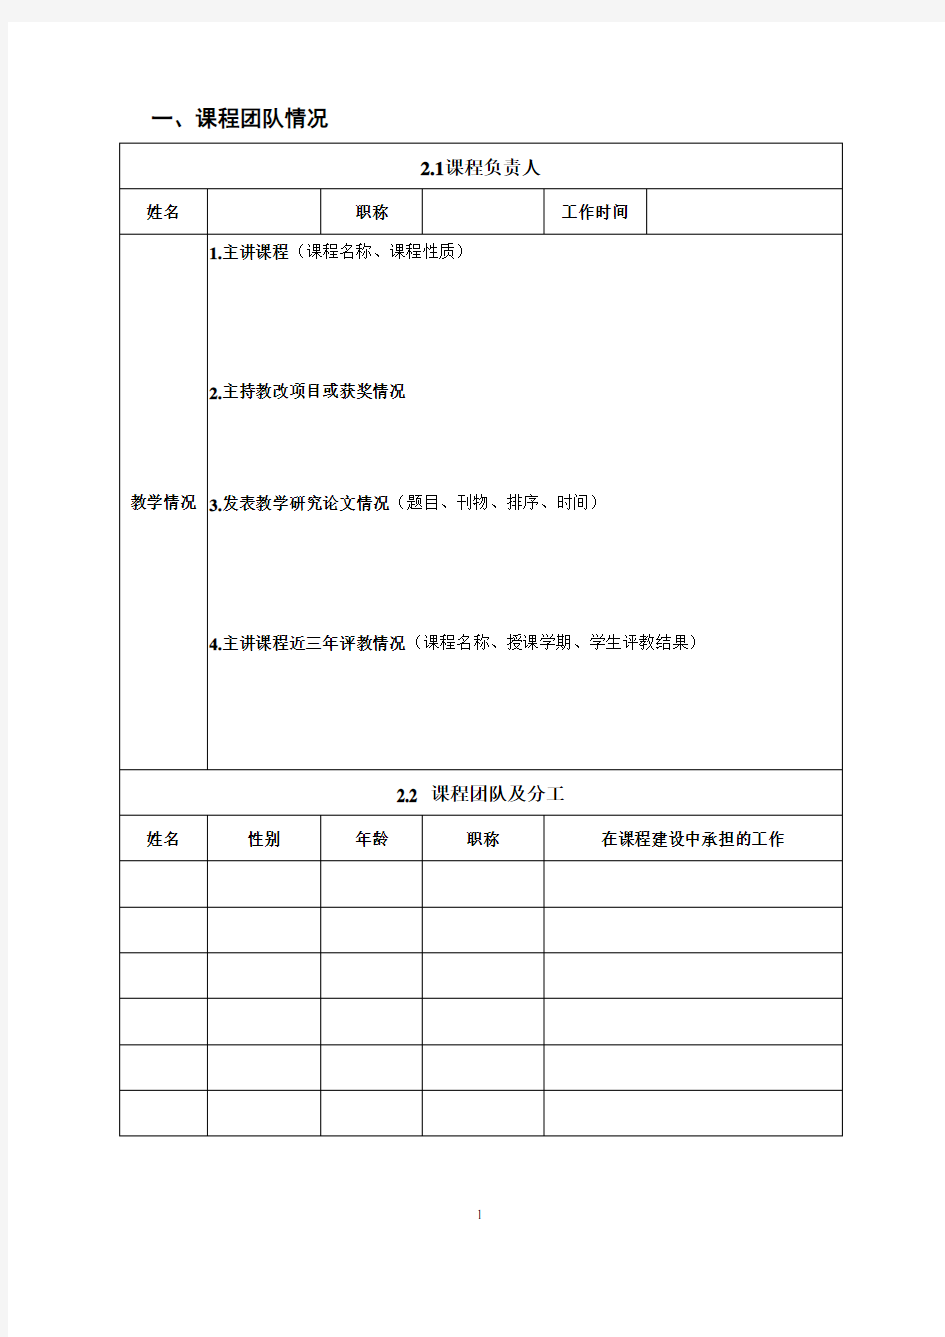 混合式教学模式改革项目申请书-中国石油大学华东